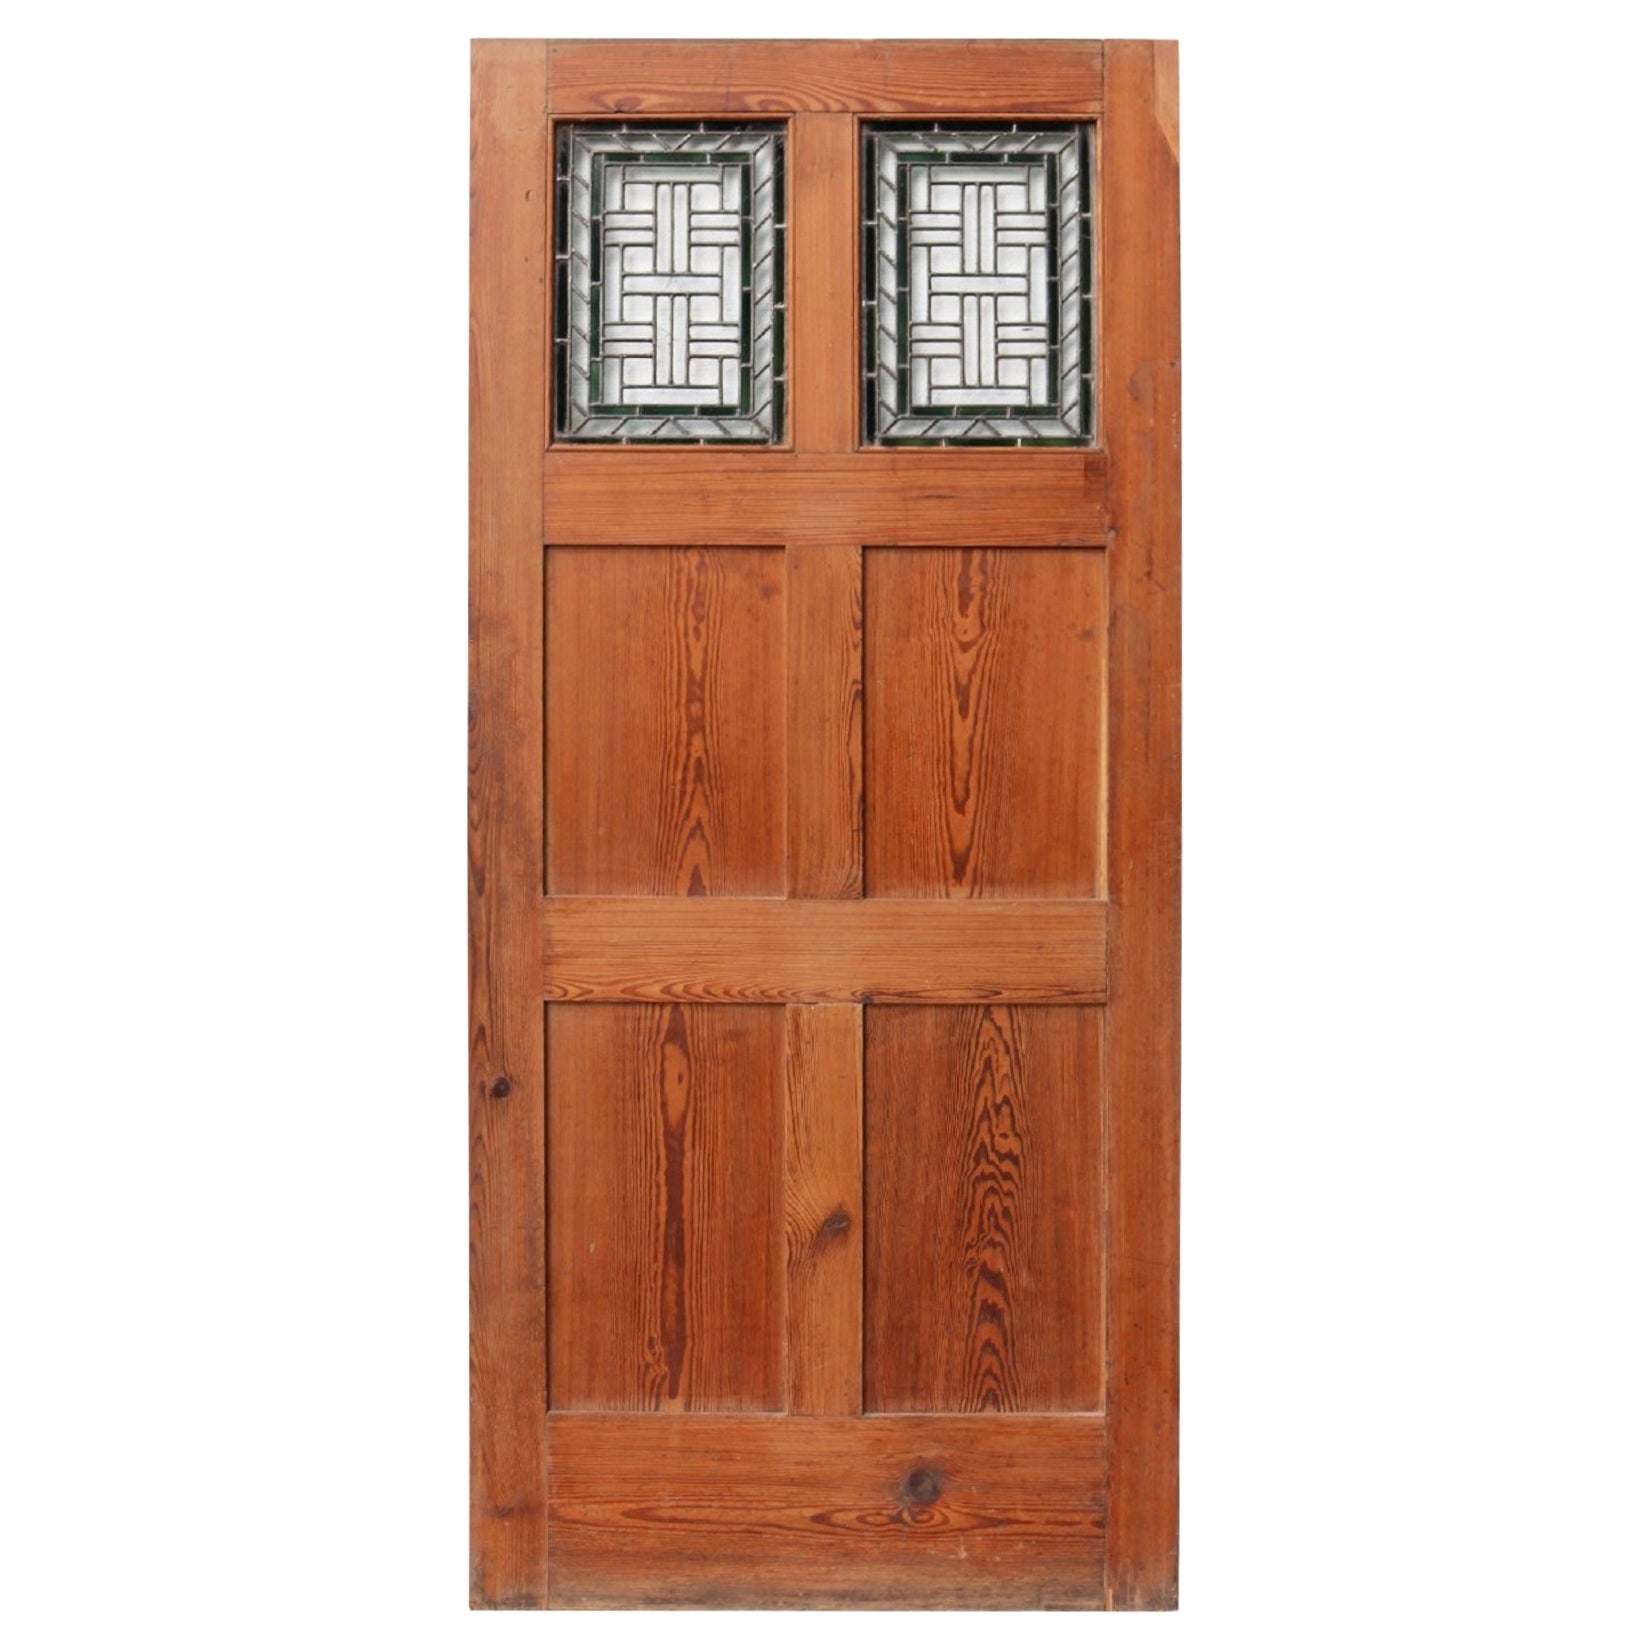 Pitch Pine Victorian Internal Door For Sale